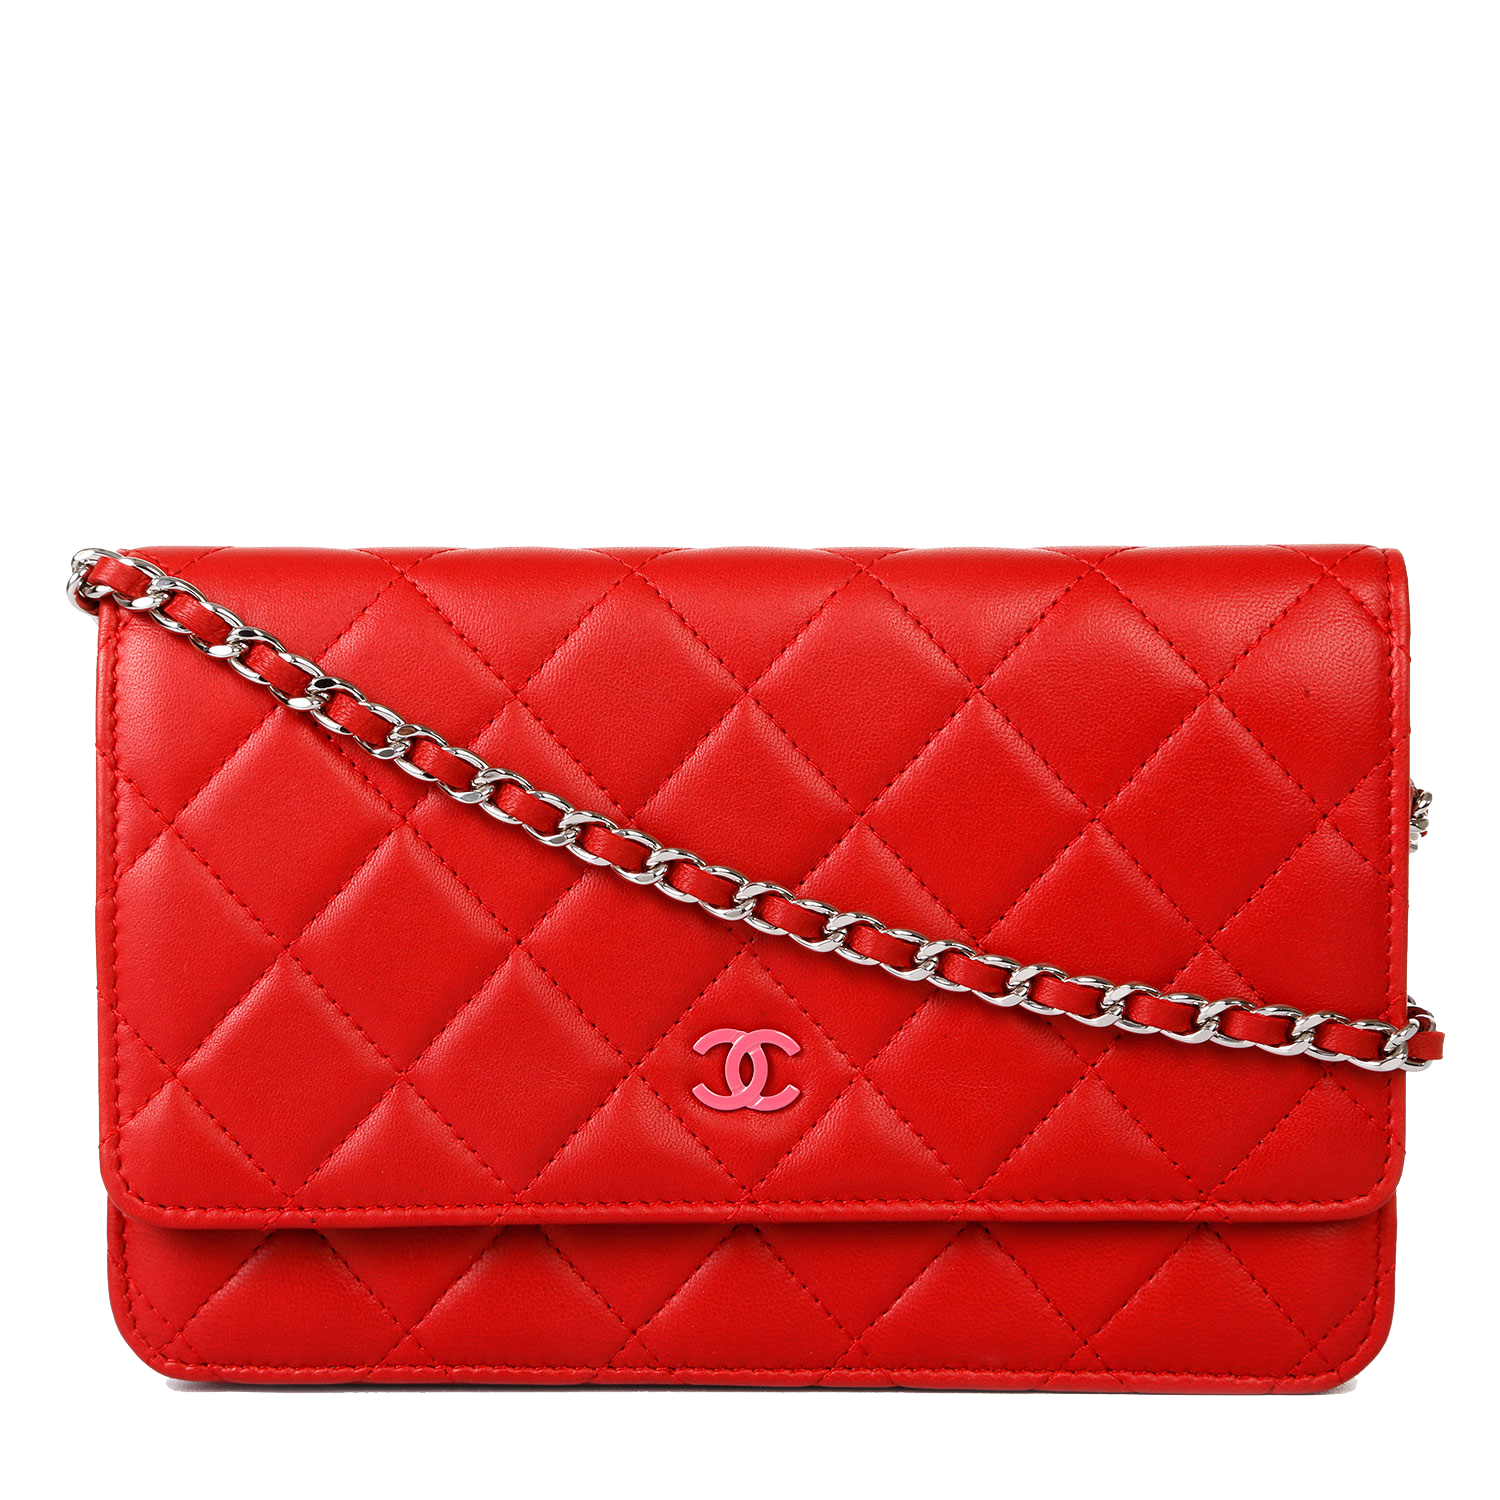 Handbag Leather Chanel Red Bag Free Transparent Image HQ PNG Image